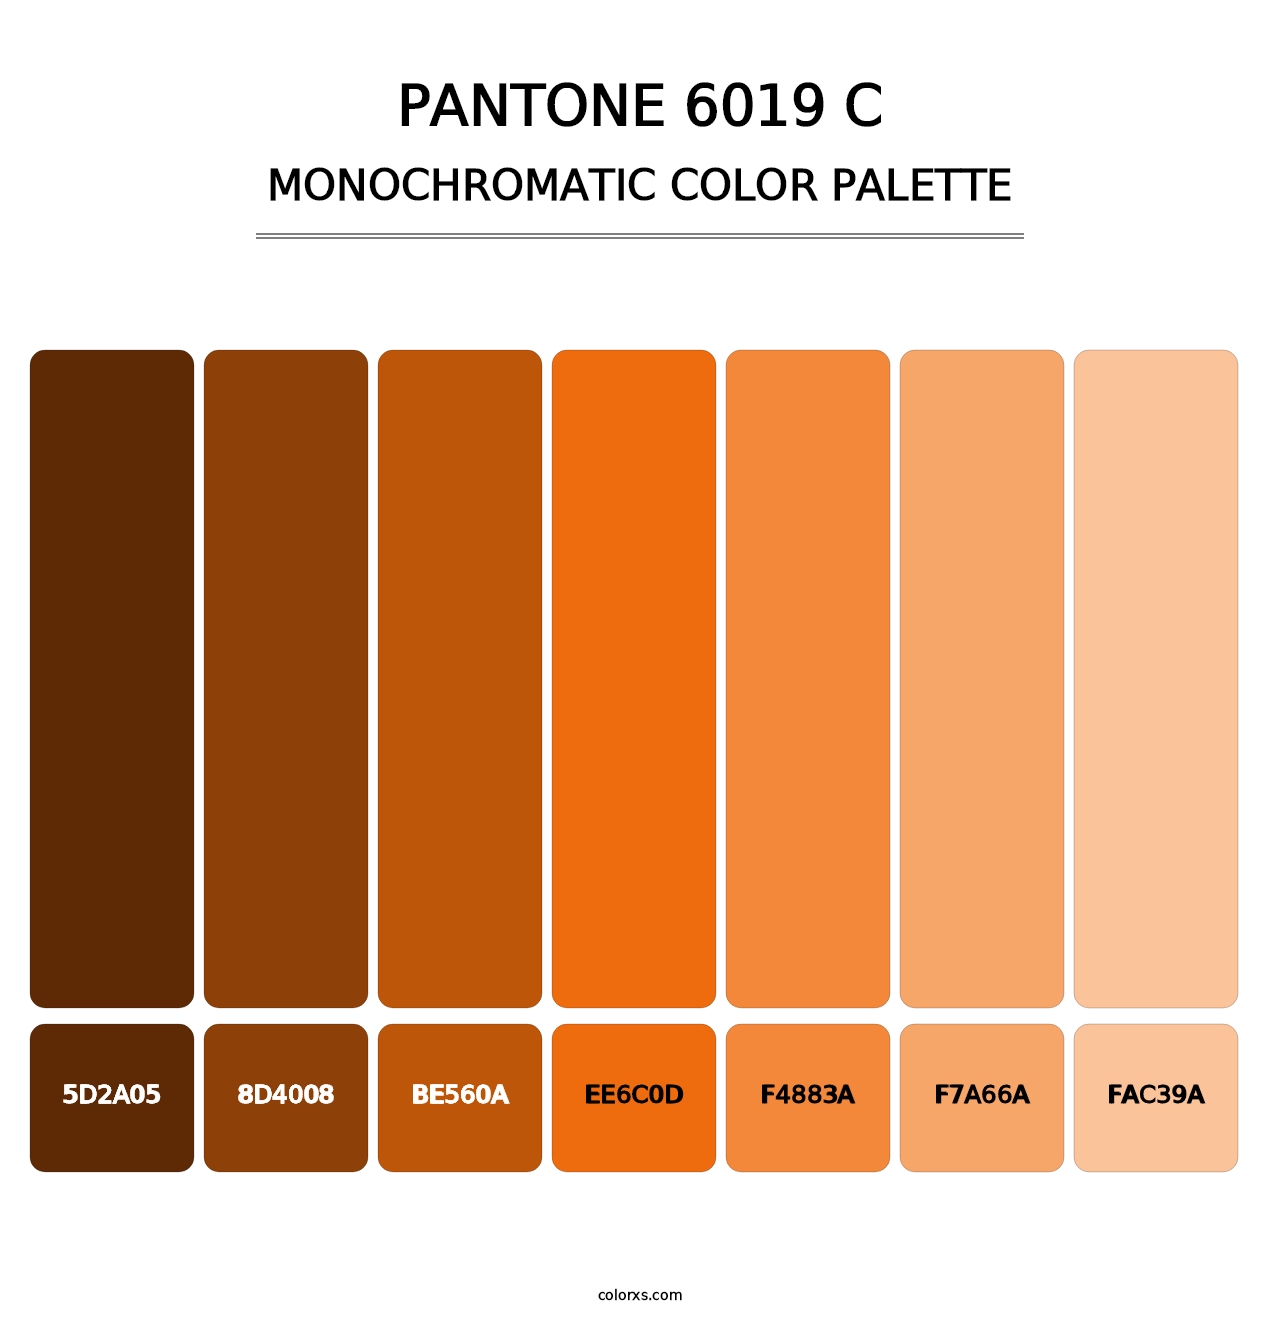 PANTONE 6019 C - Monochromatic Color Palette